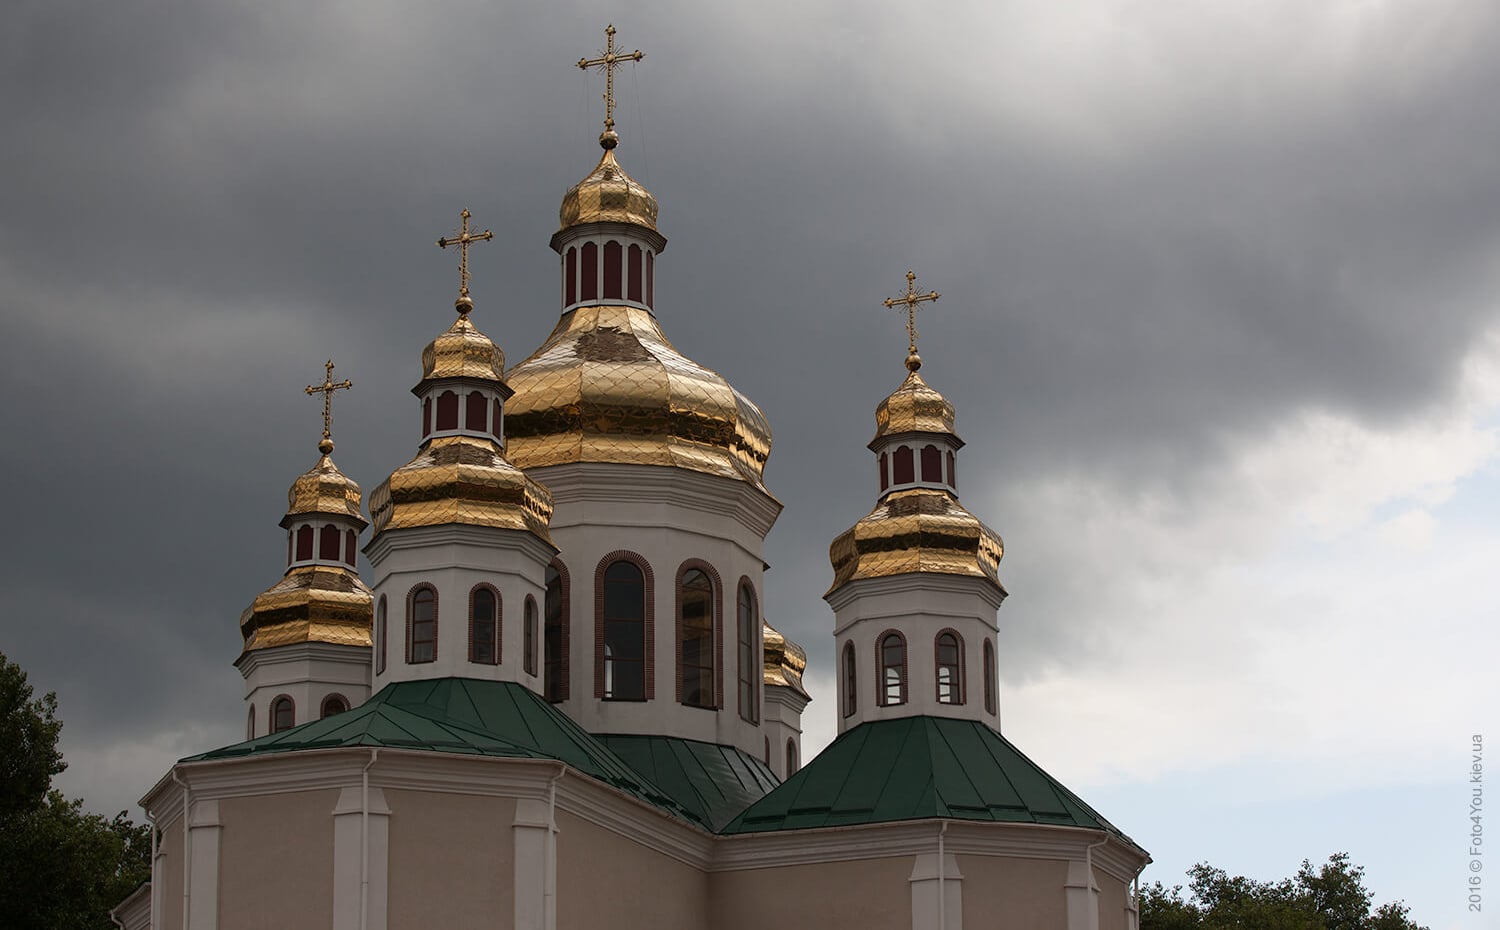 Les autorités locales ferment 20 lieux de culte de l’Église orthodoxe ukrainienne en vue de leur transfert forcé à l’Église autocéphale 